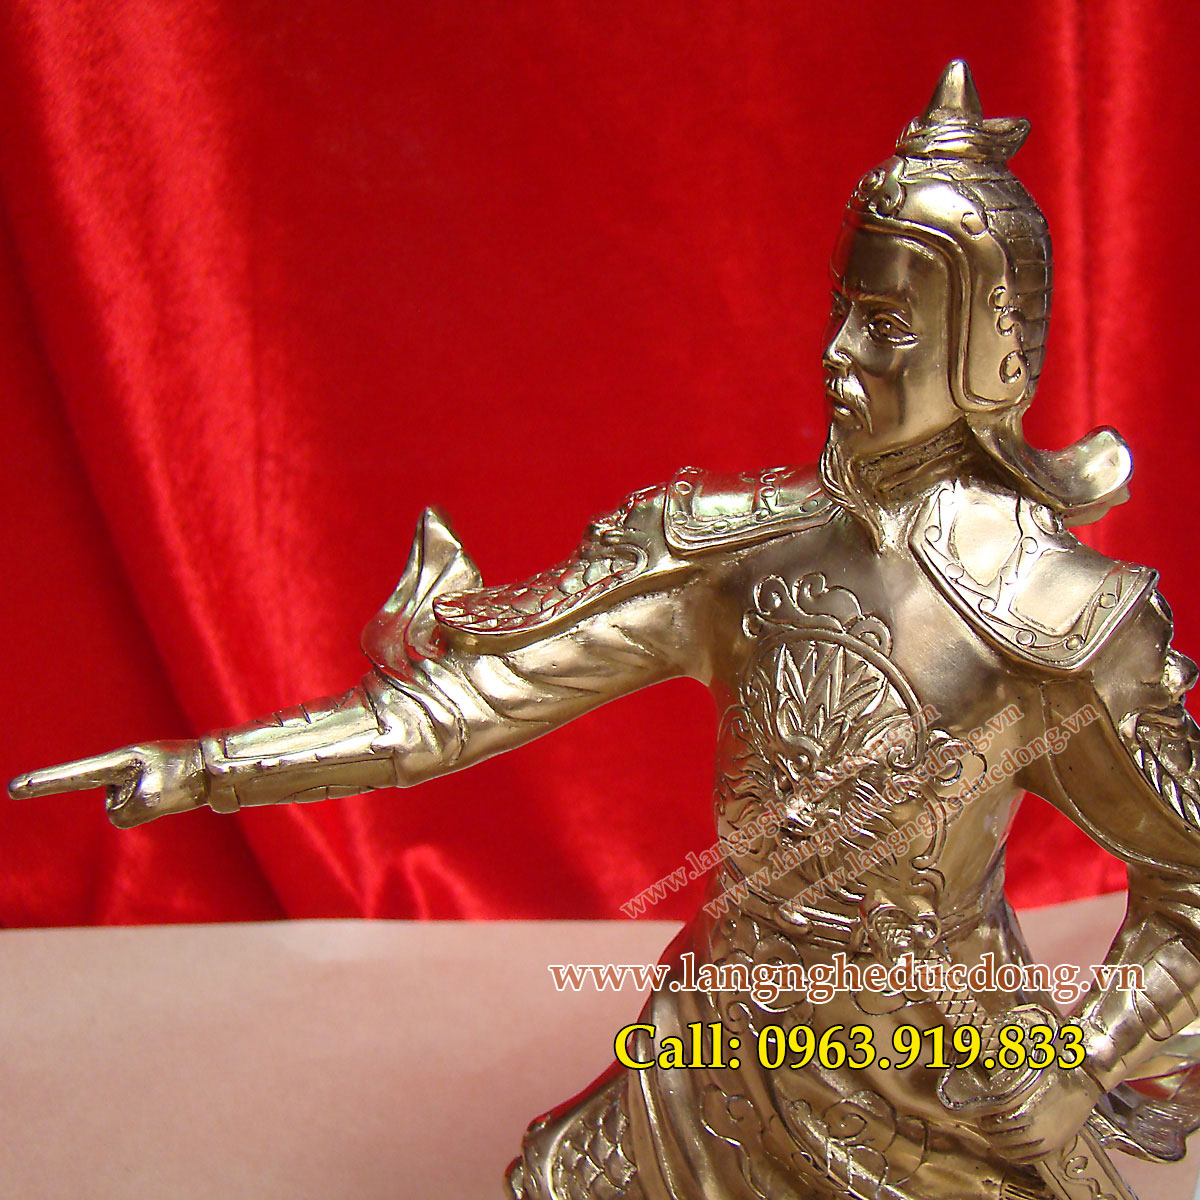 langngheducdong.vn - Tượng Trần Hưng Đạo, tượng Đức thánh Trần chỉ tay cao 25cm